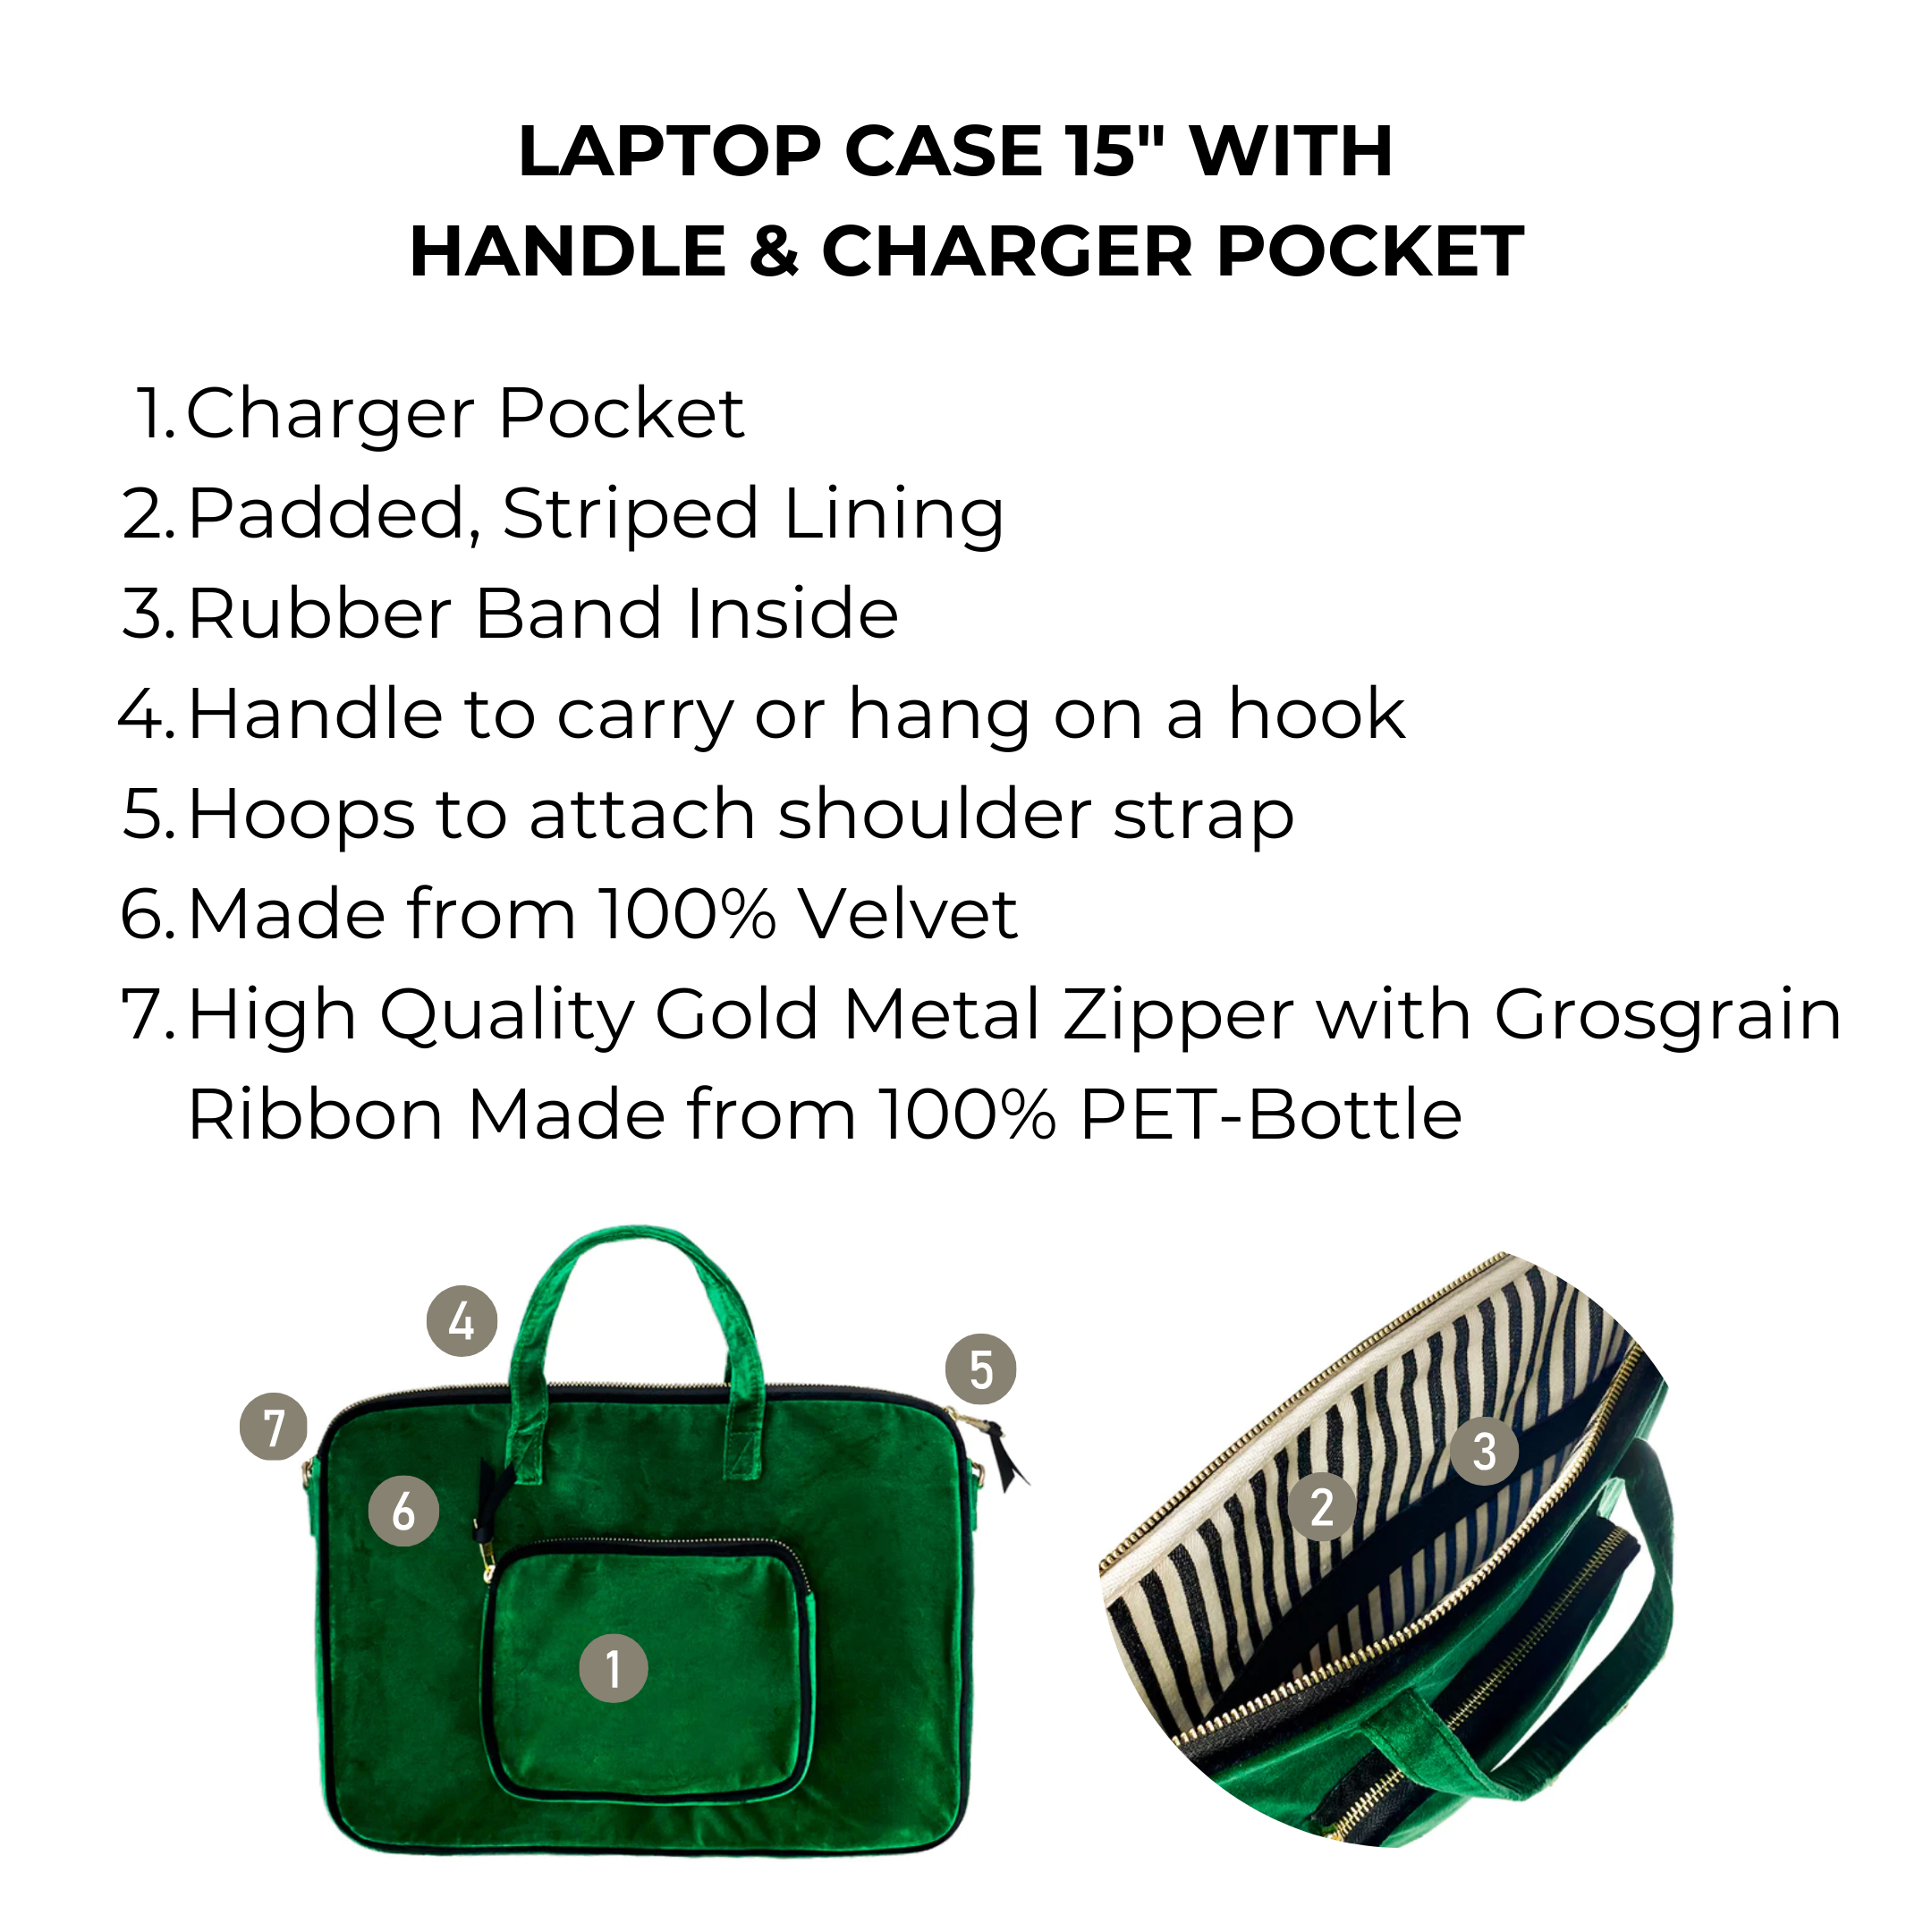 Laptop Case 15", Chain & Charger Pocket, Green Velvet | Bag-all